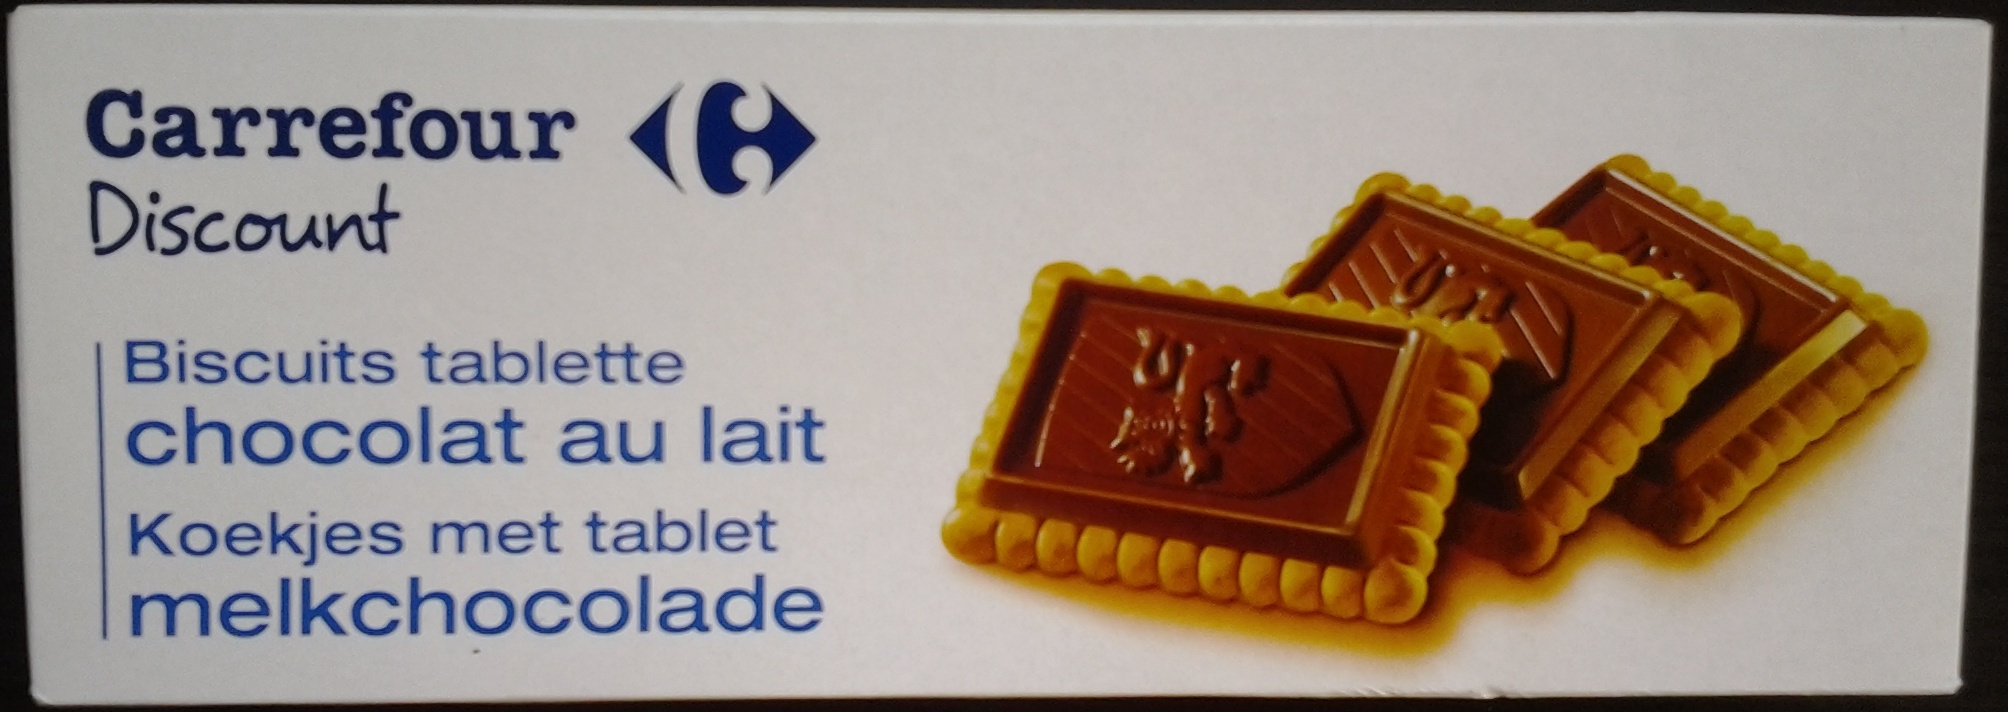 Biscuits tablette chocolat au lait - Producto - fr